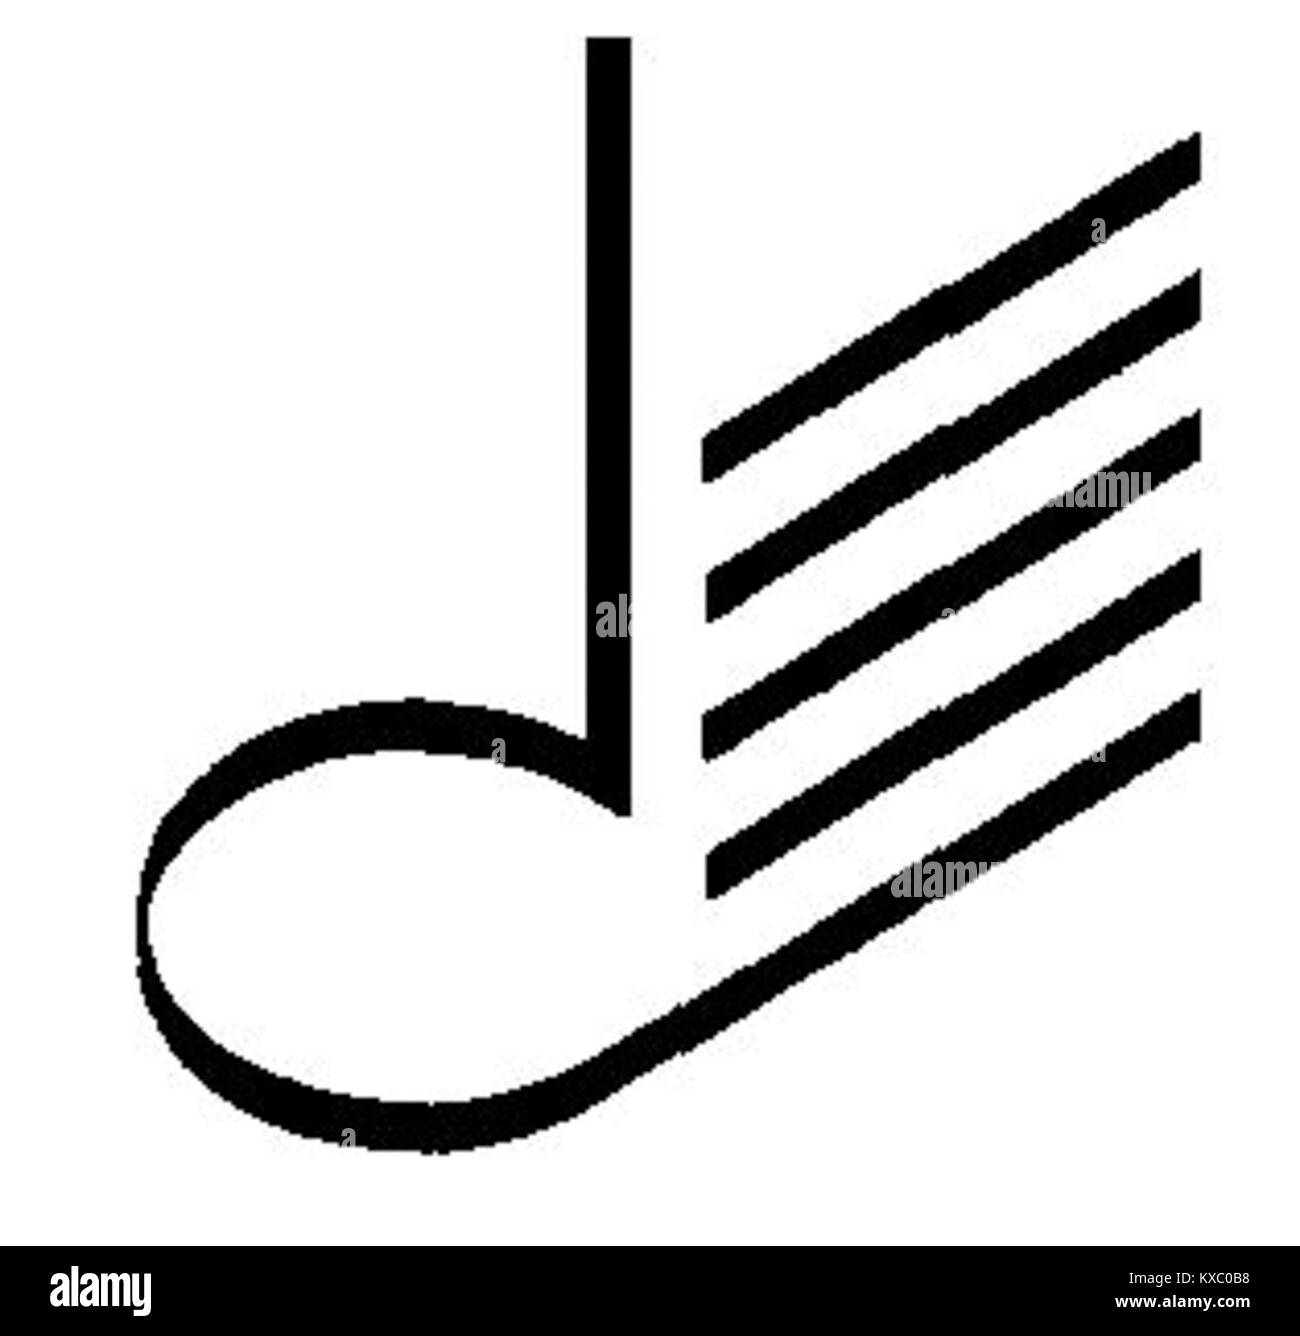 Städtische Musikschule Hamm Logo Stock Photo